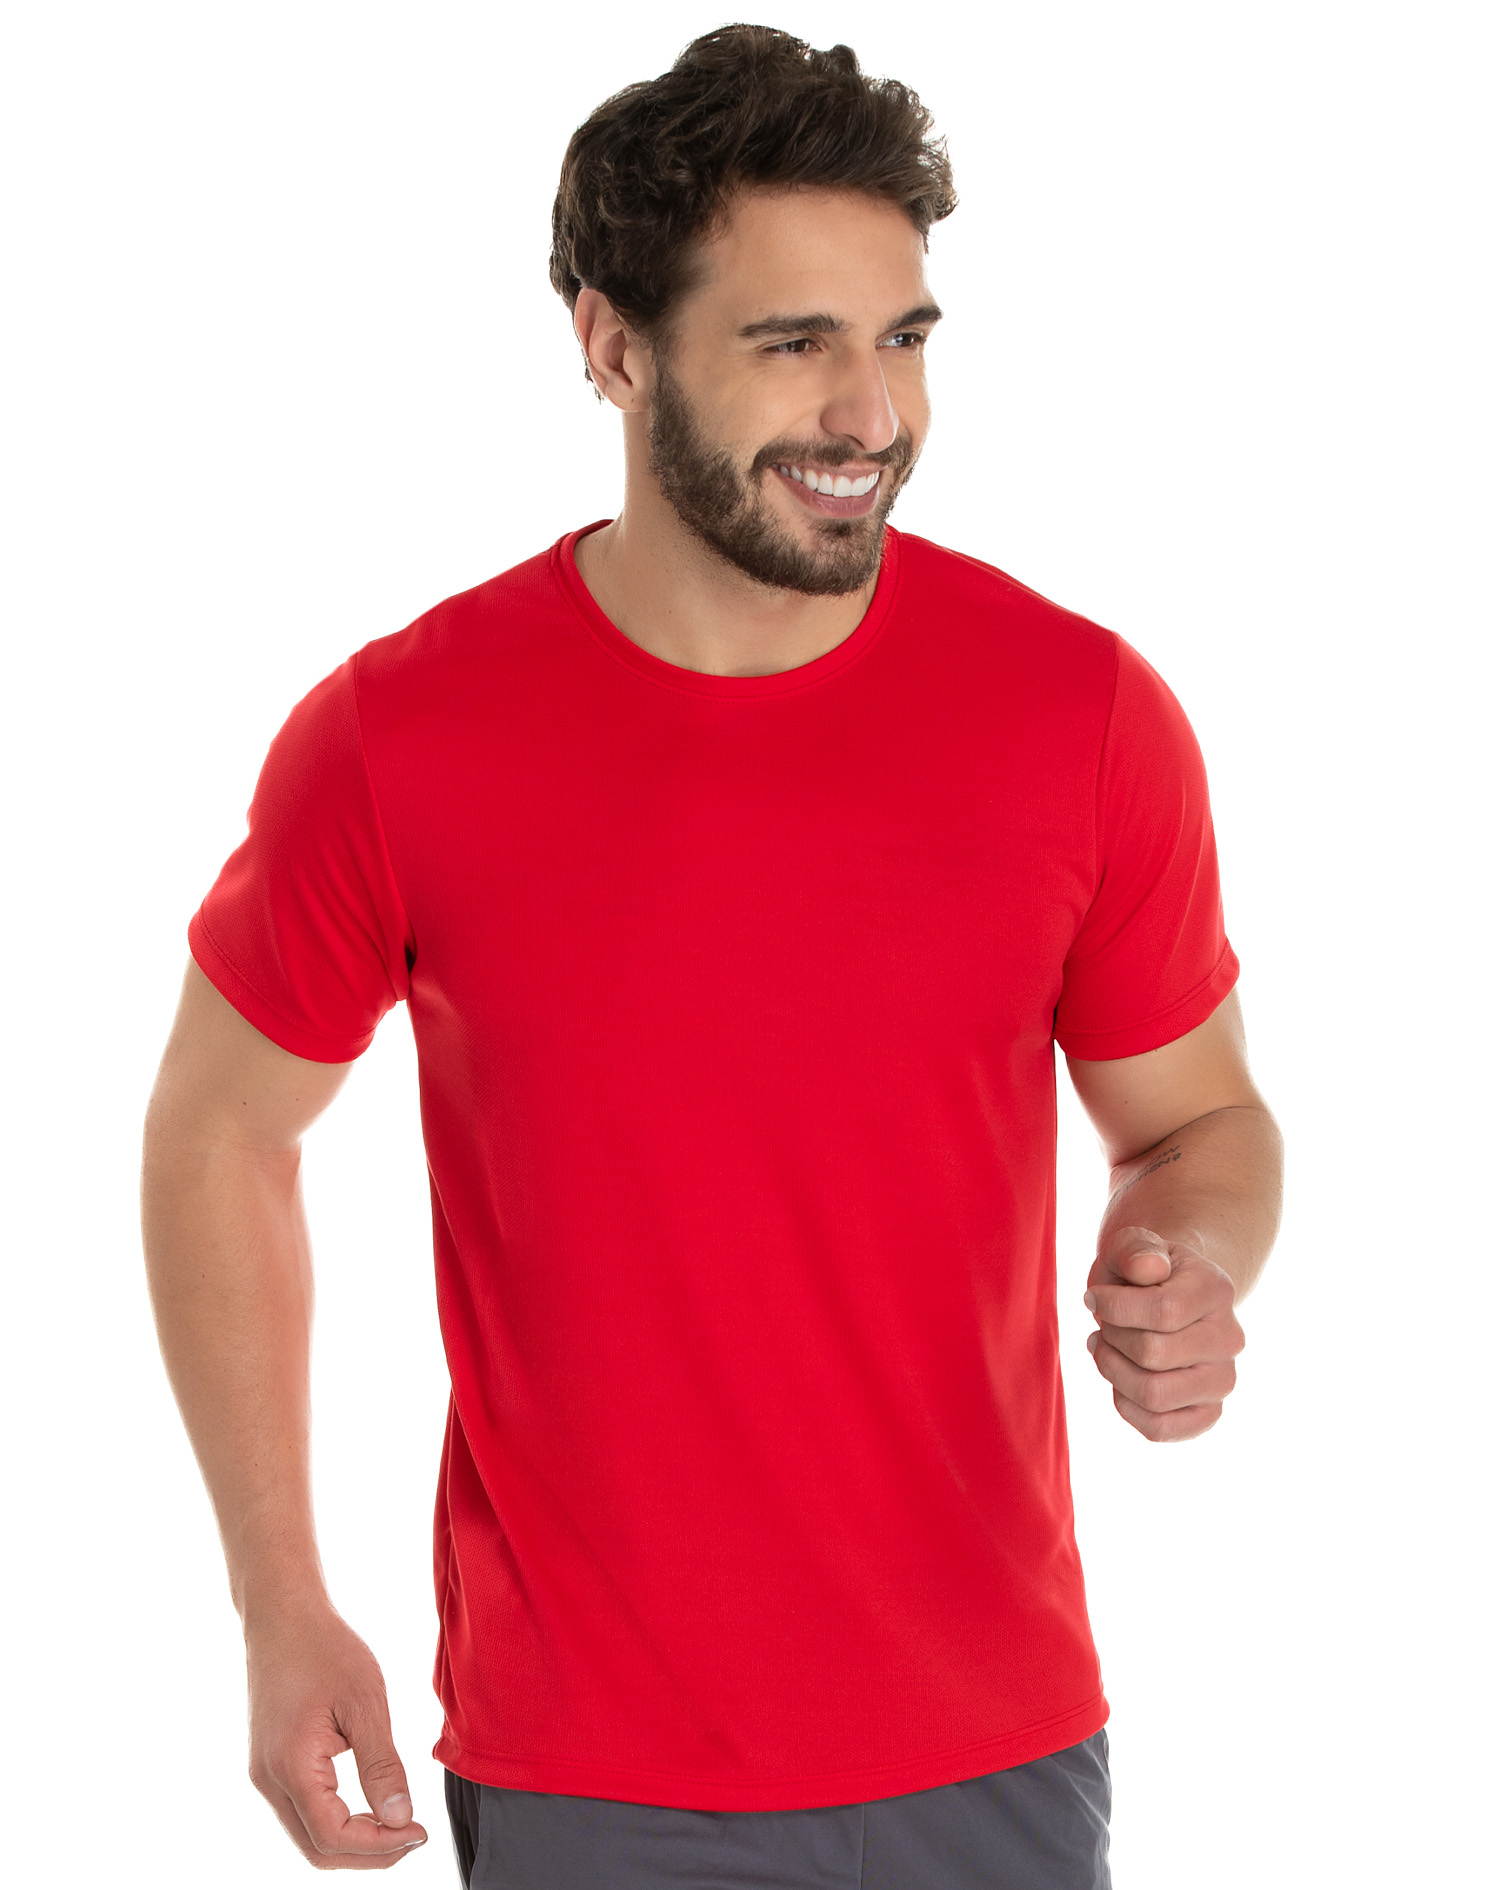 https://www.lojamirante.com.br/uploads/produtos/camiseta-dry-fit-vermelha-protecao-uv-30-617d762f71624.jpg